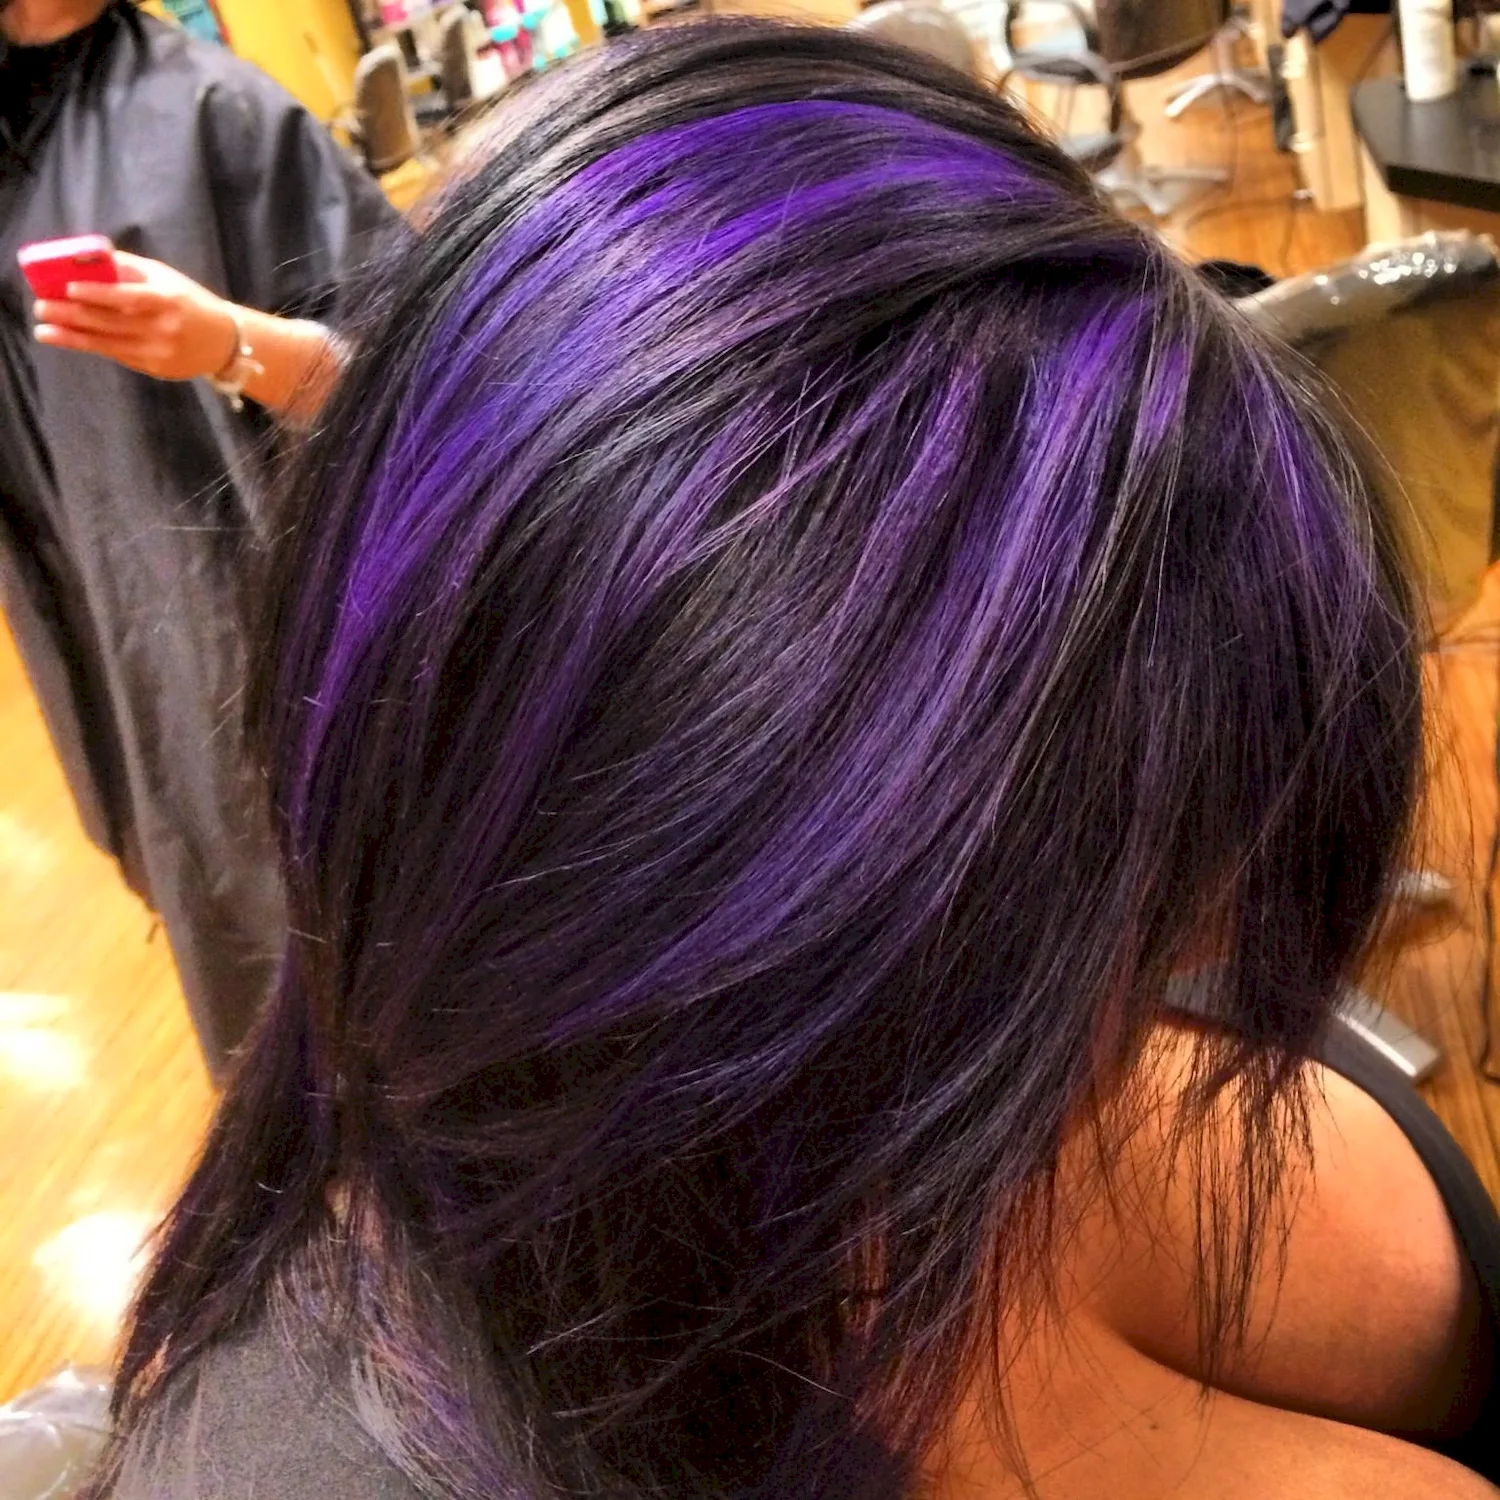 Волосы с фиолетовыми прядями